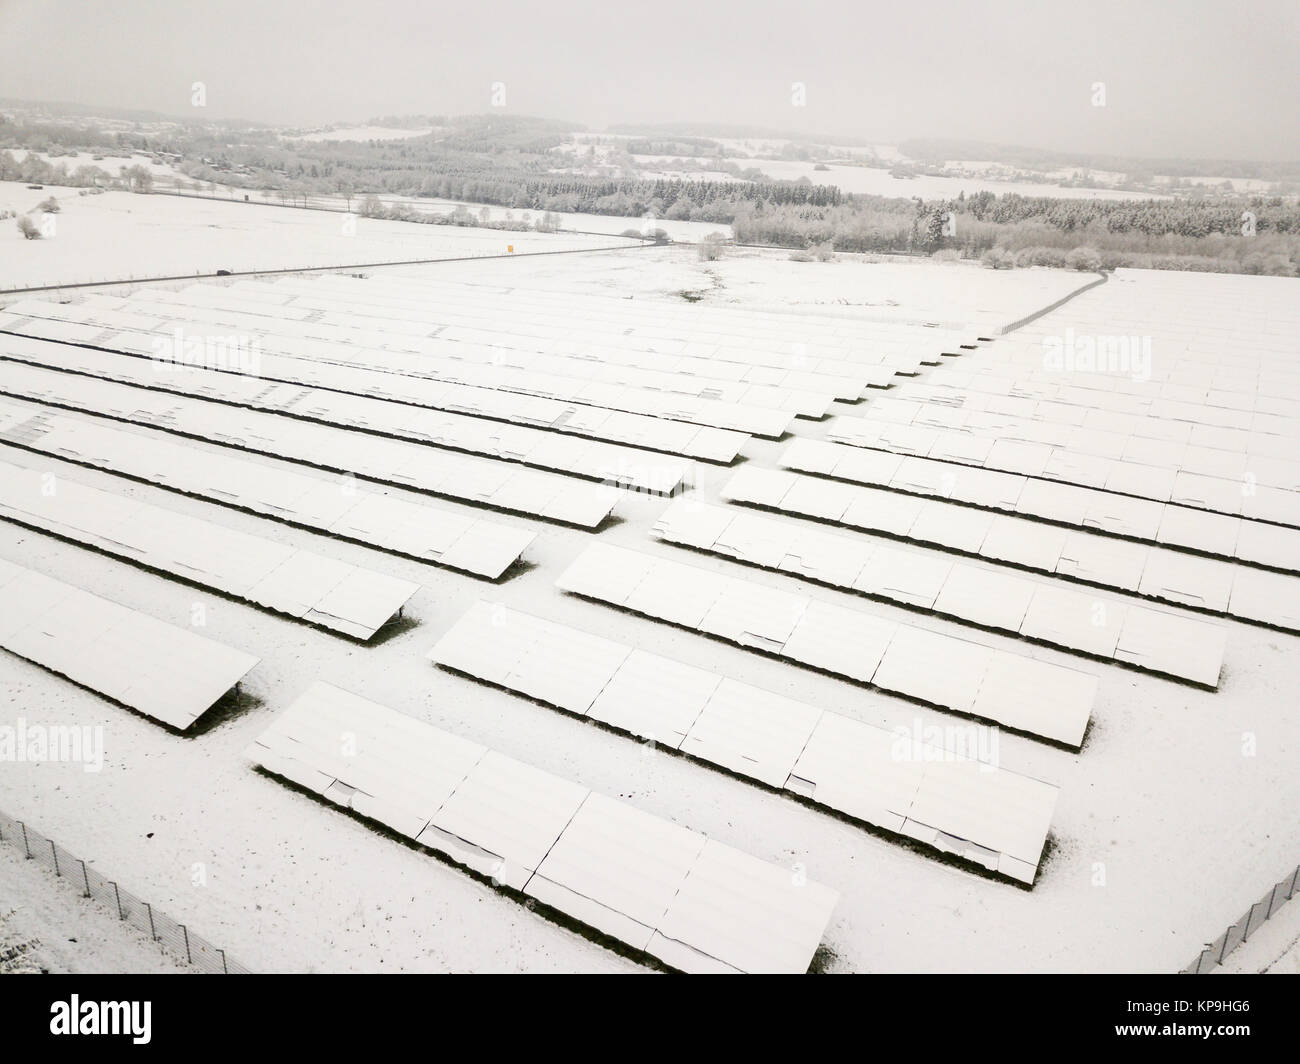 Planta de energía solar cubierto de nieve en invierno Foto de stock